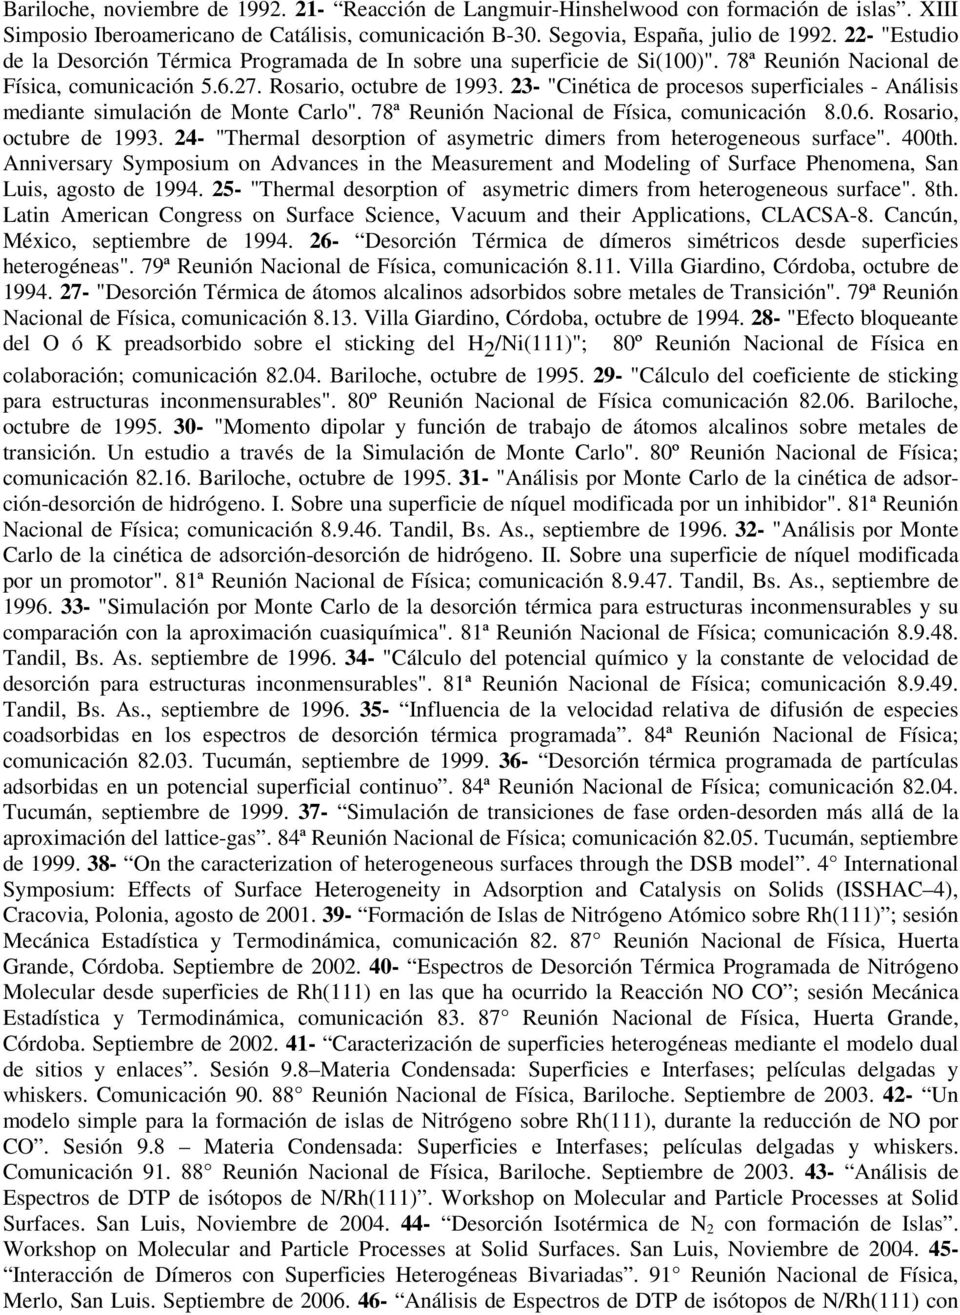 23- "Cinética de procesos superficiales - Análisis mediante simulación de Monte Carlo". 78ª Reunión Nacional de Física, comunicación 8.0.6. Rosario, octubre de 1993.